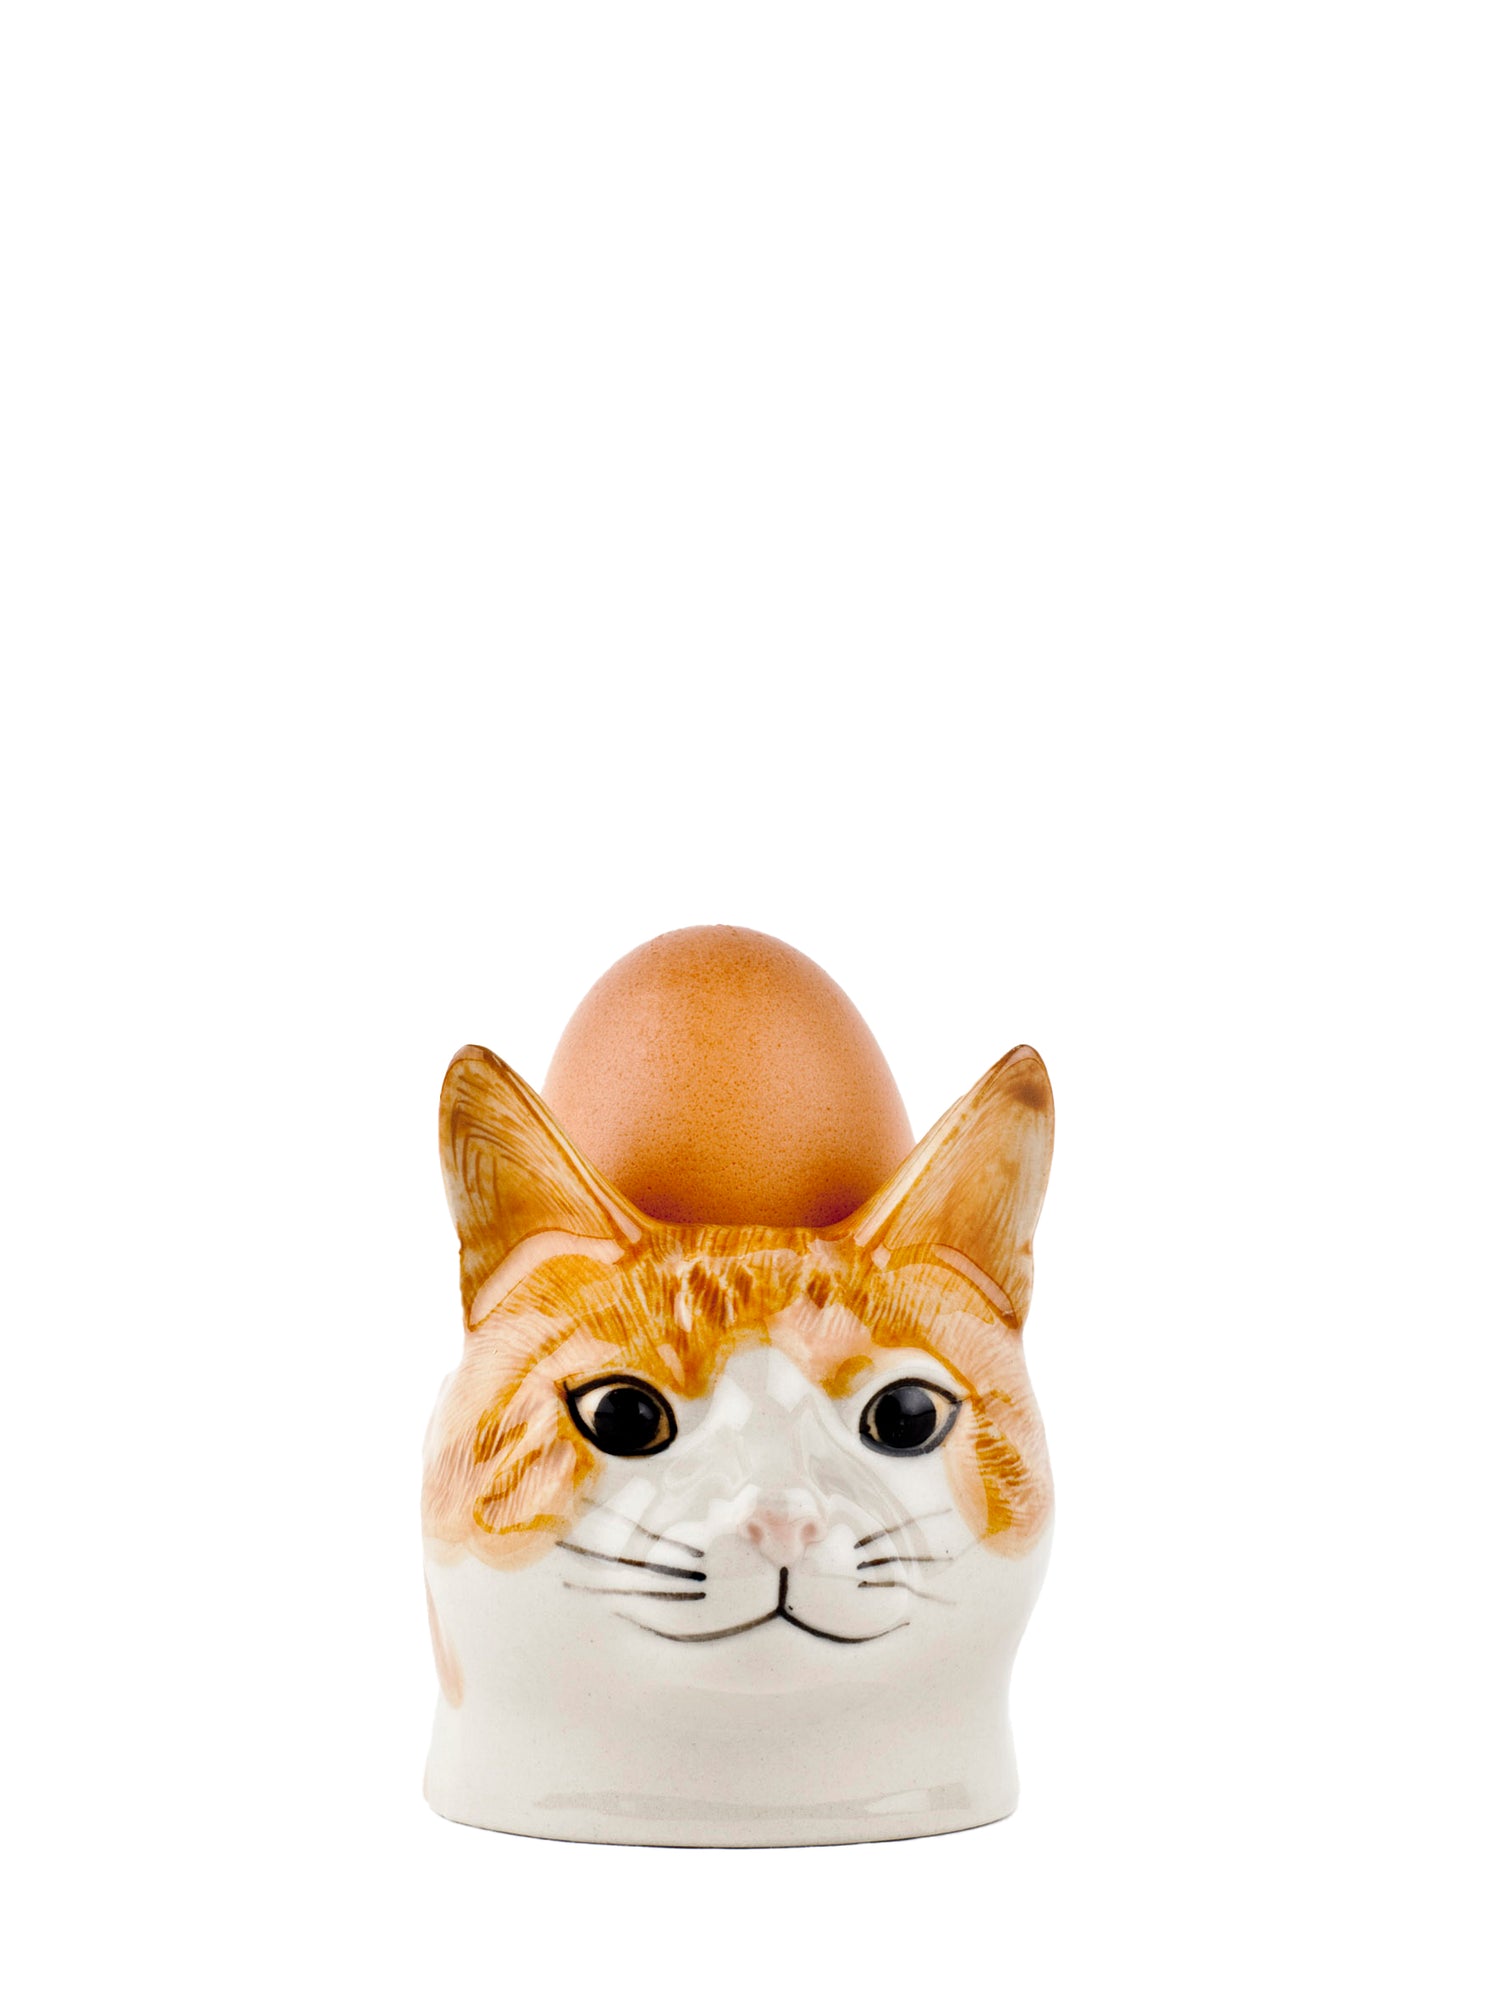 Squash cat egg cup